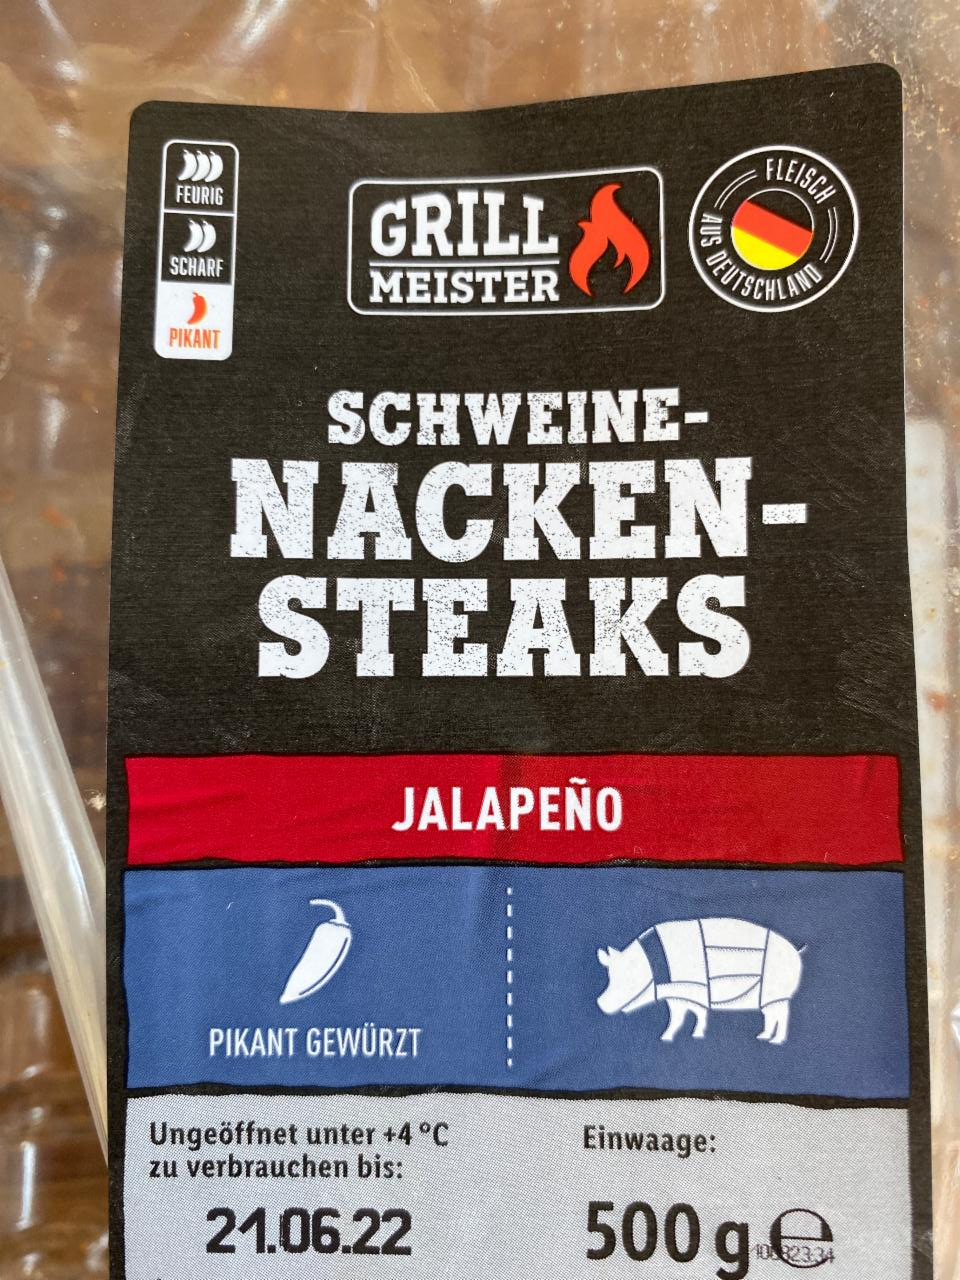 Fotografie - Schweine-Nacken-Steaks Jalapeño Grillmeister